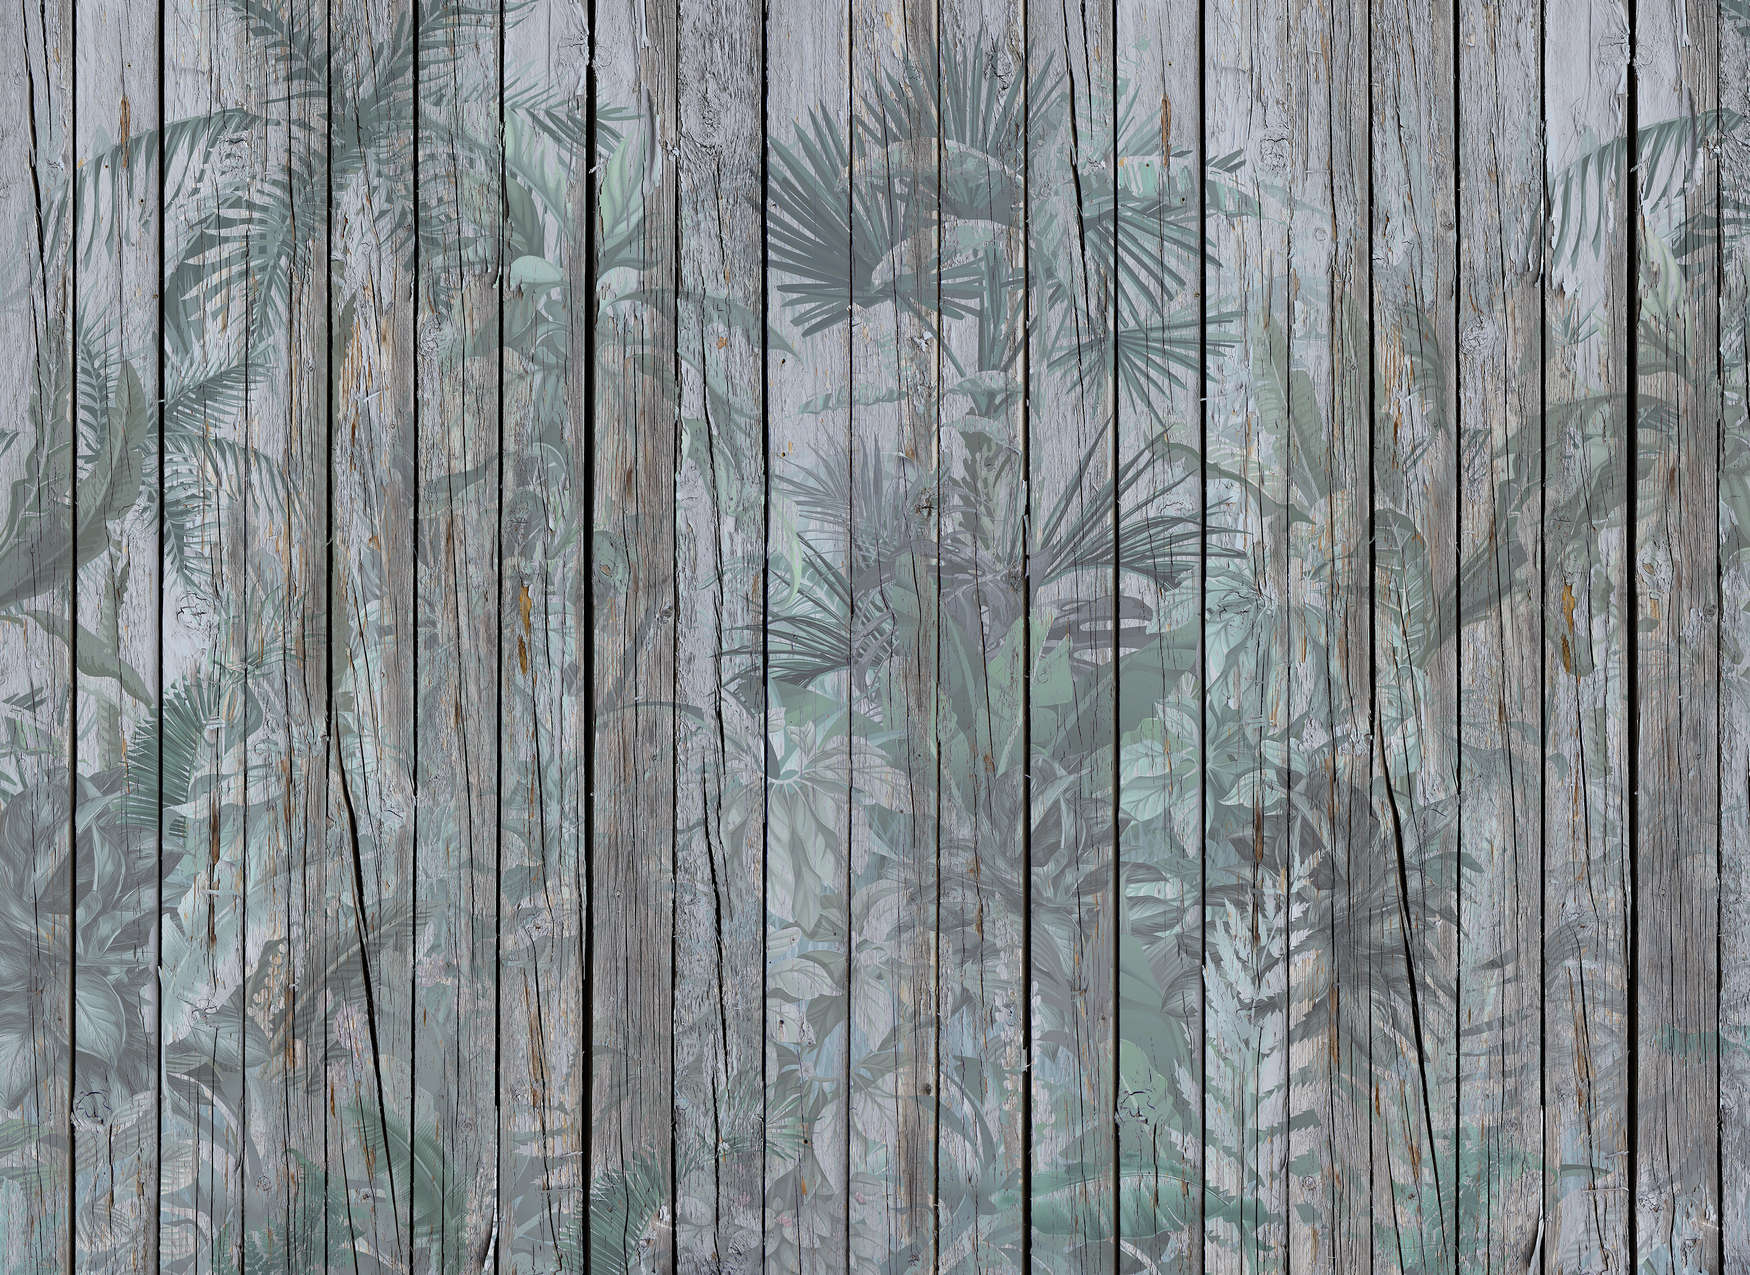             Fototapete Holzwand mit Dschungelpflanzen – Braun, Grün
        